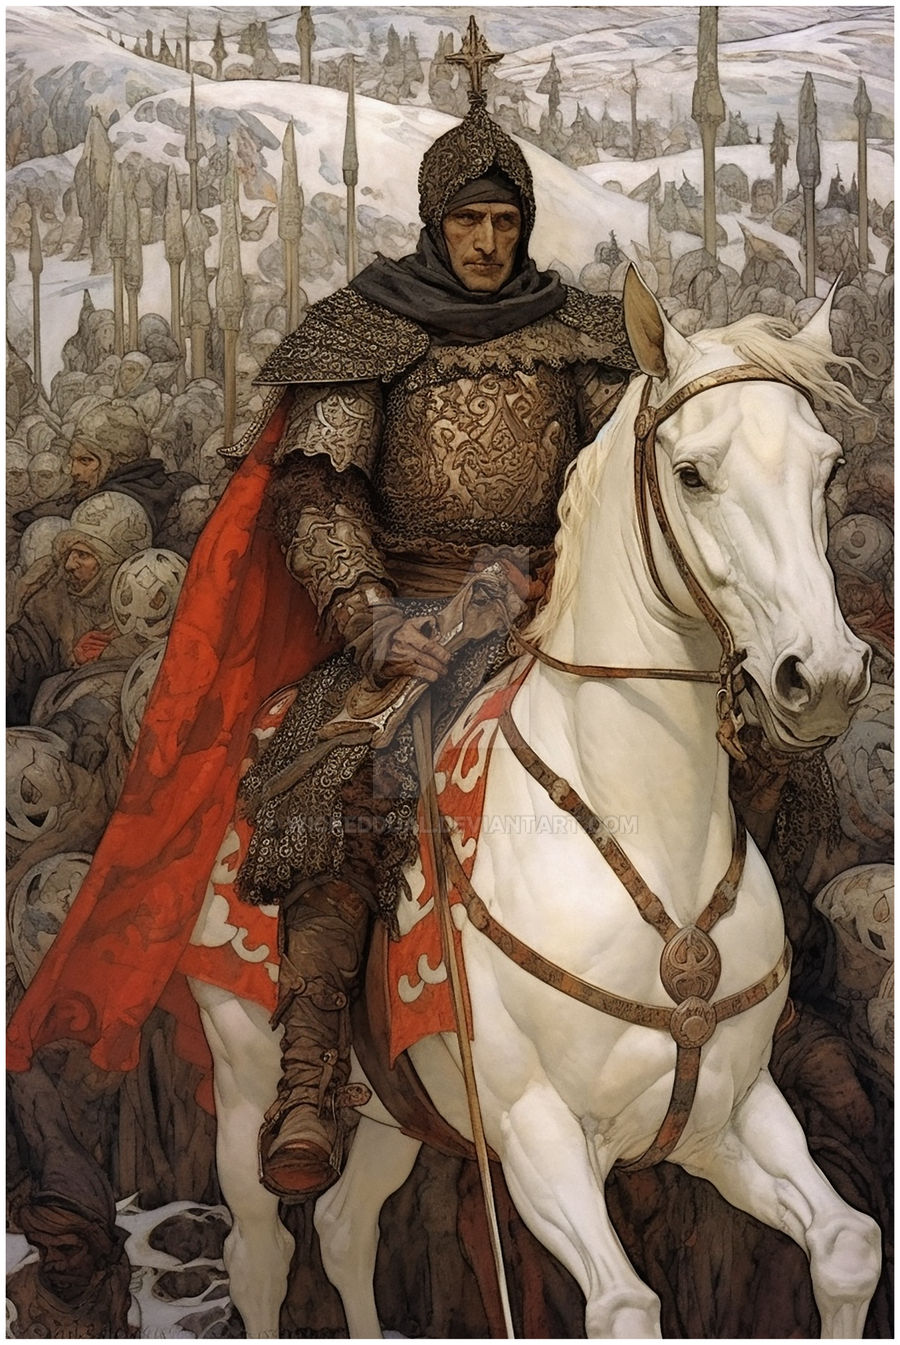 Medieval fantasy king by AlfirinEdhel on DeviantArt